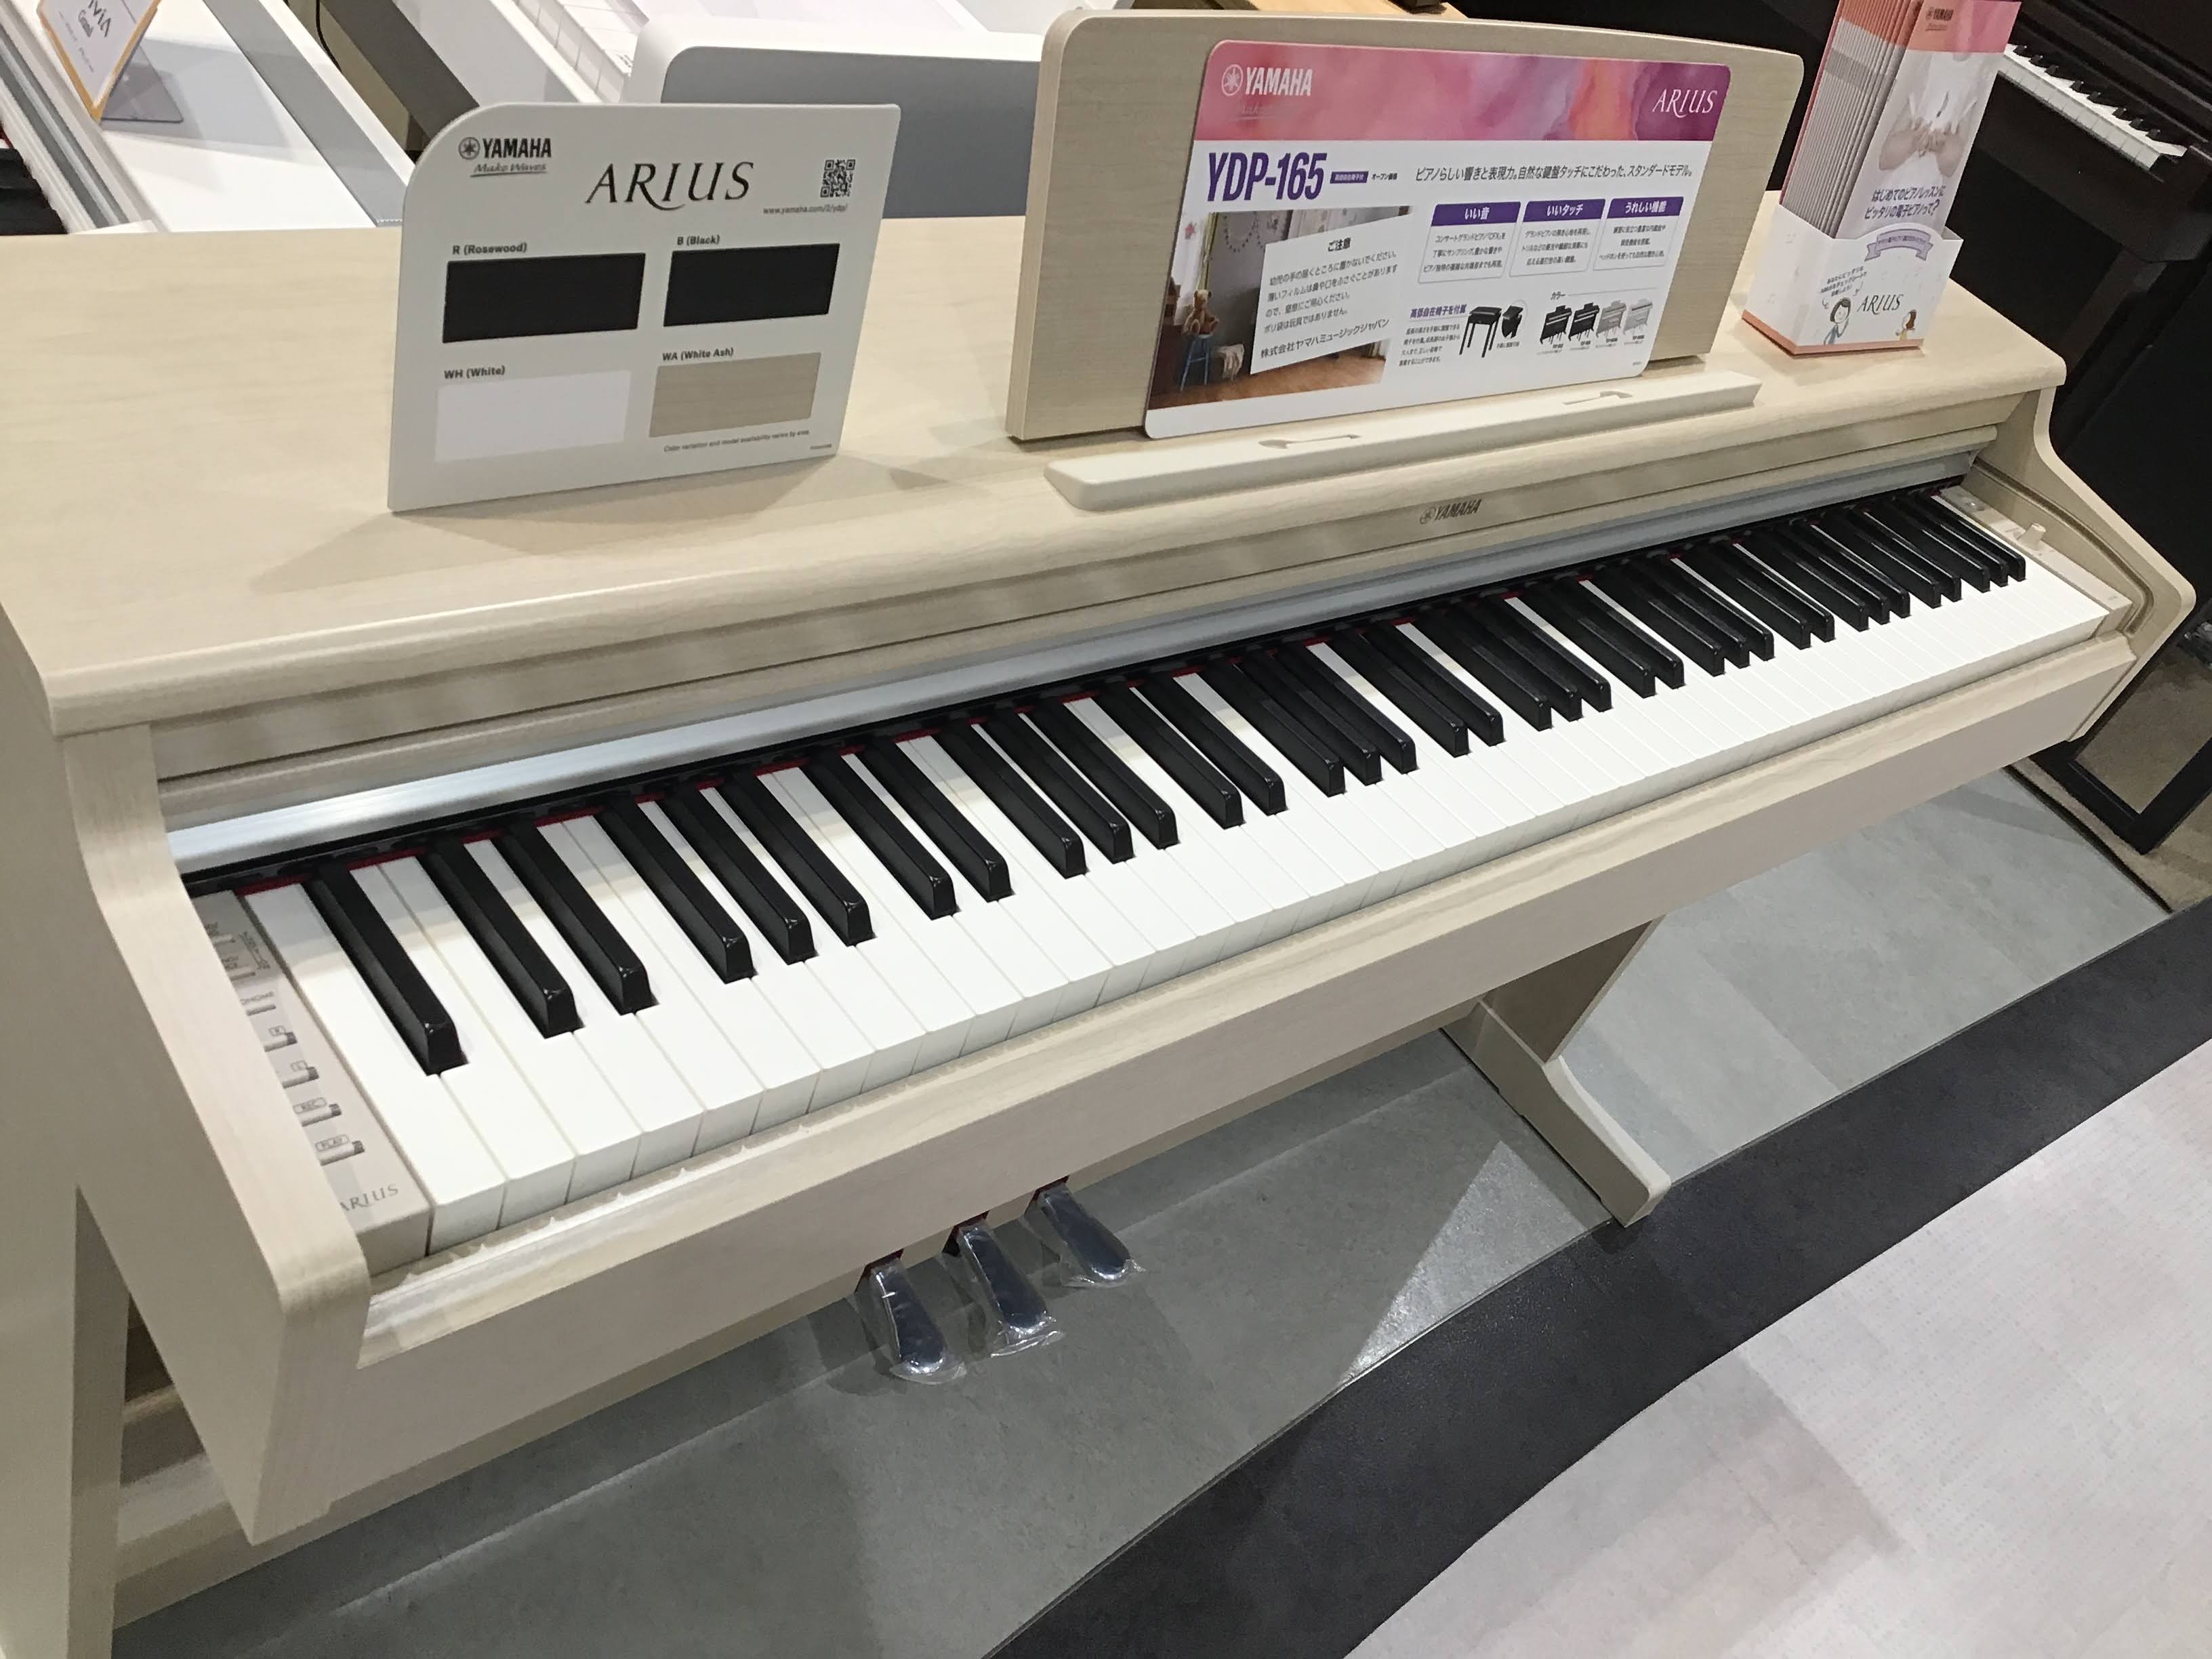 ヤマハARIUS電子ピアノ - 電子楽器